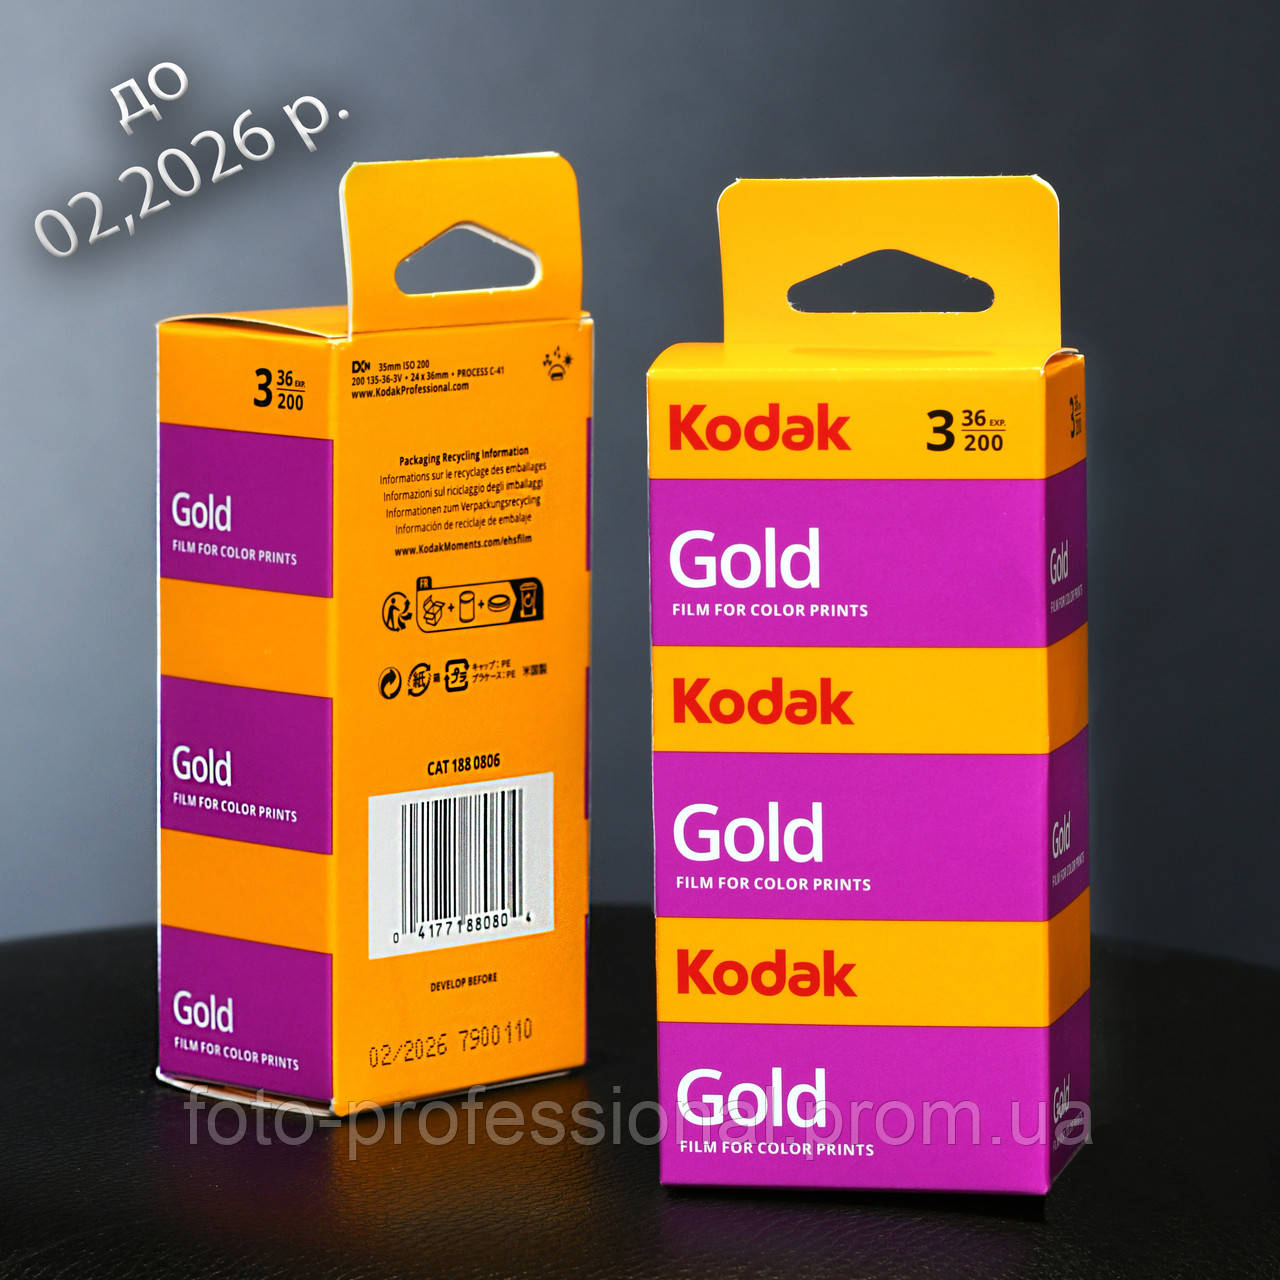 Фотоплівка KODAK GOLD 200/36x3 (trójpak) (до 05,2026р.)